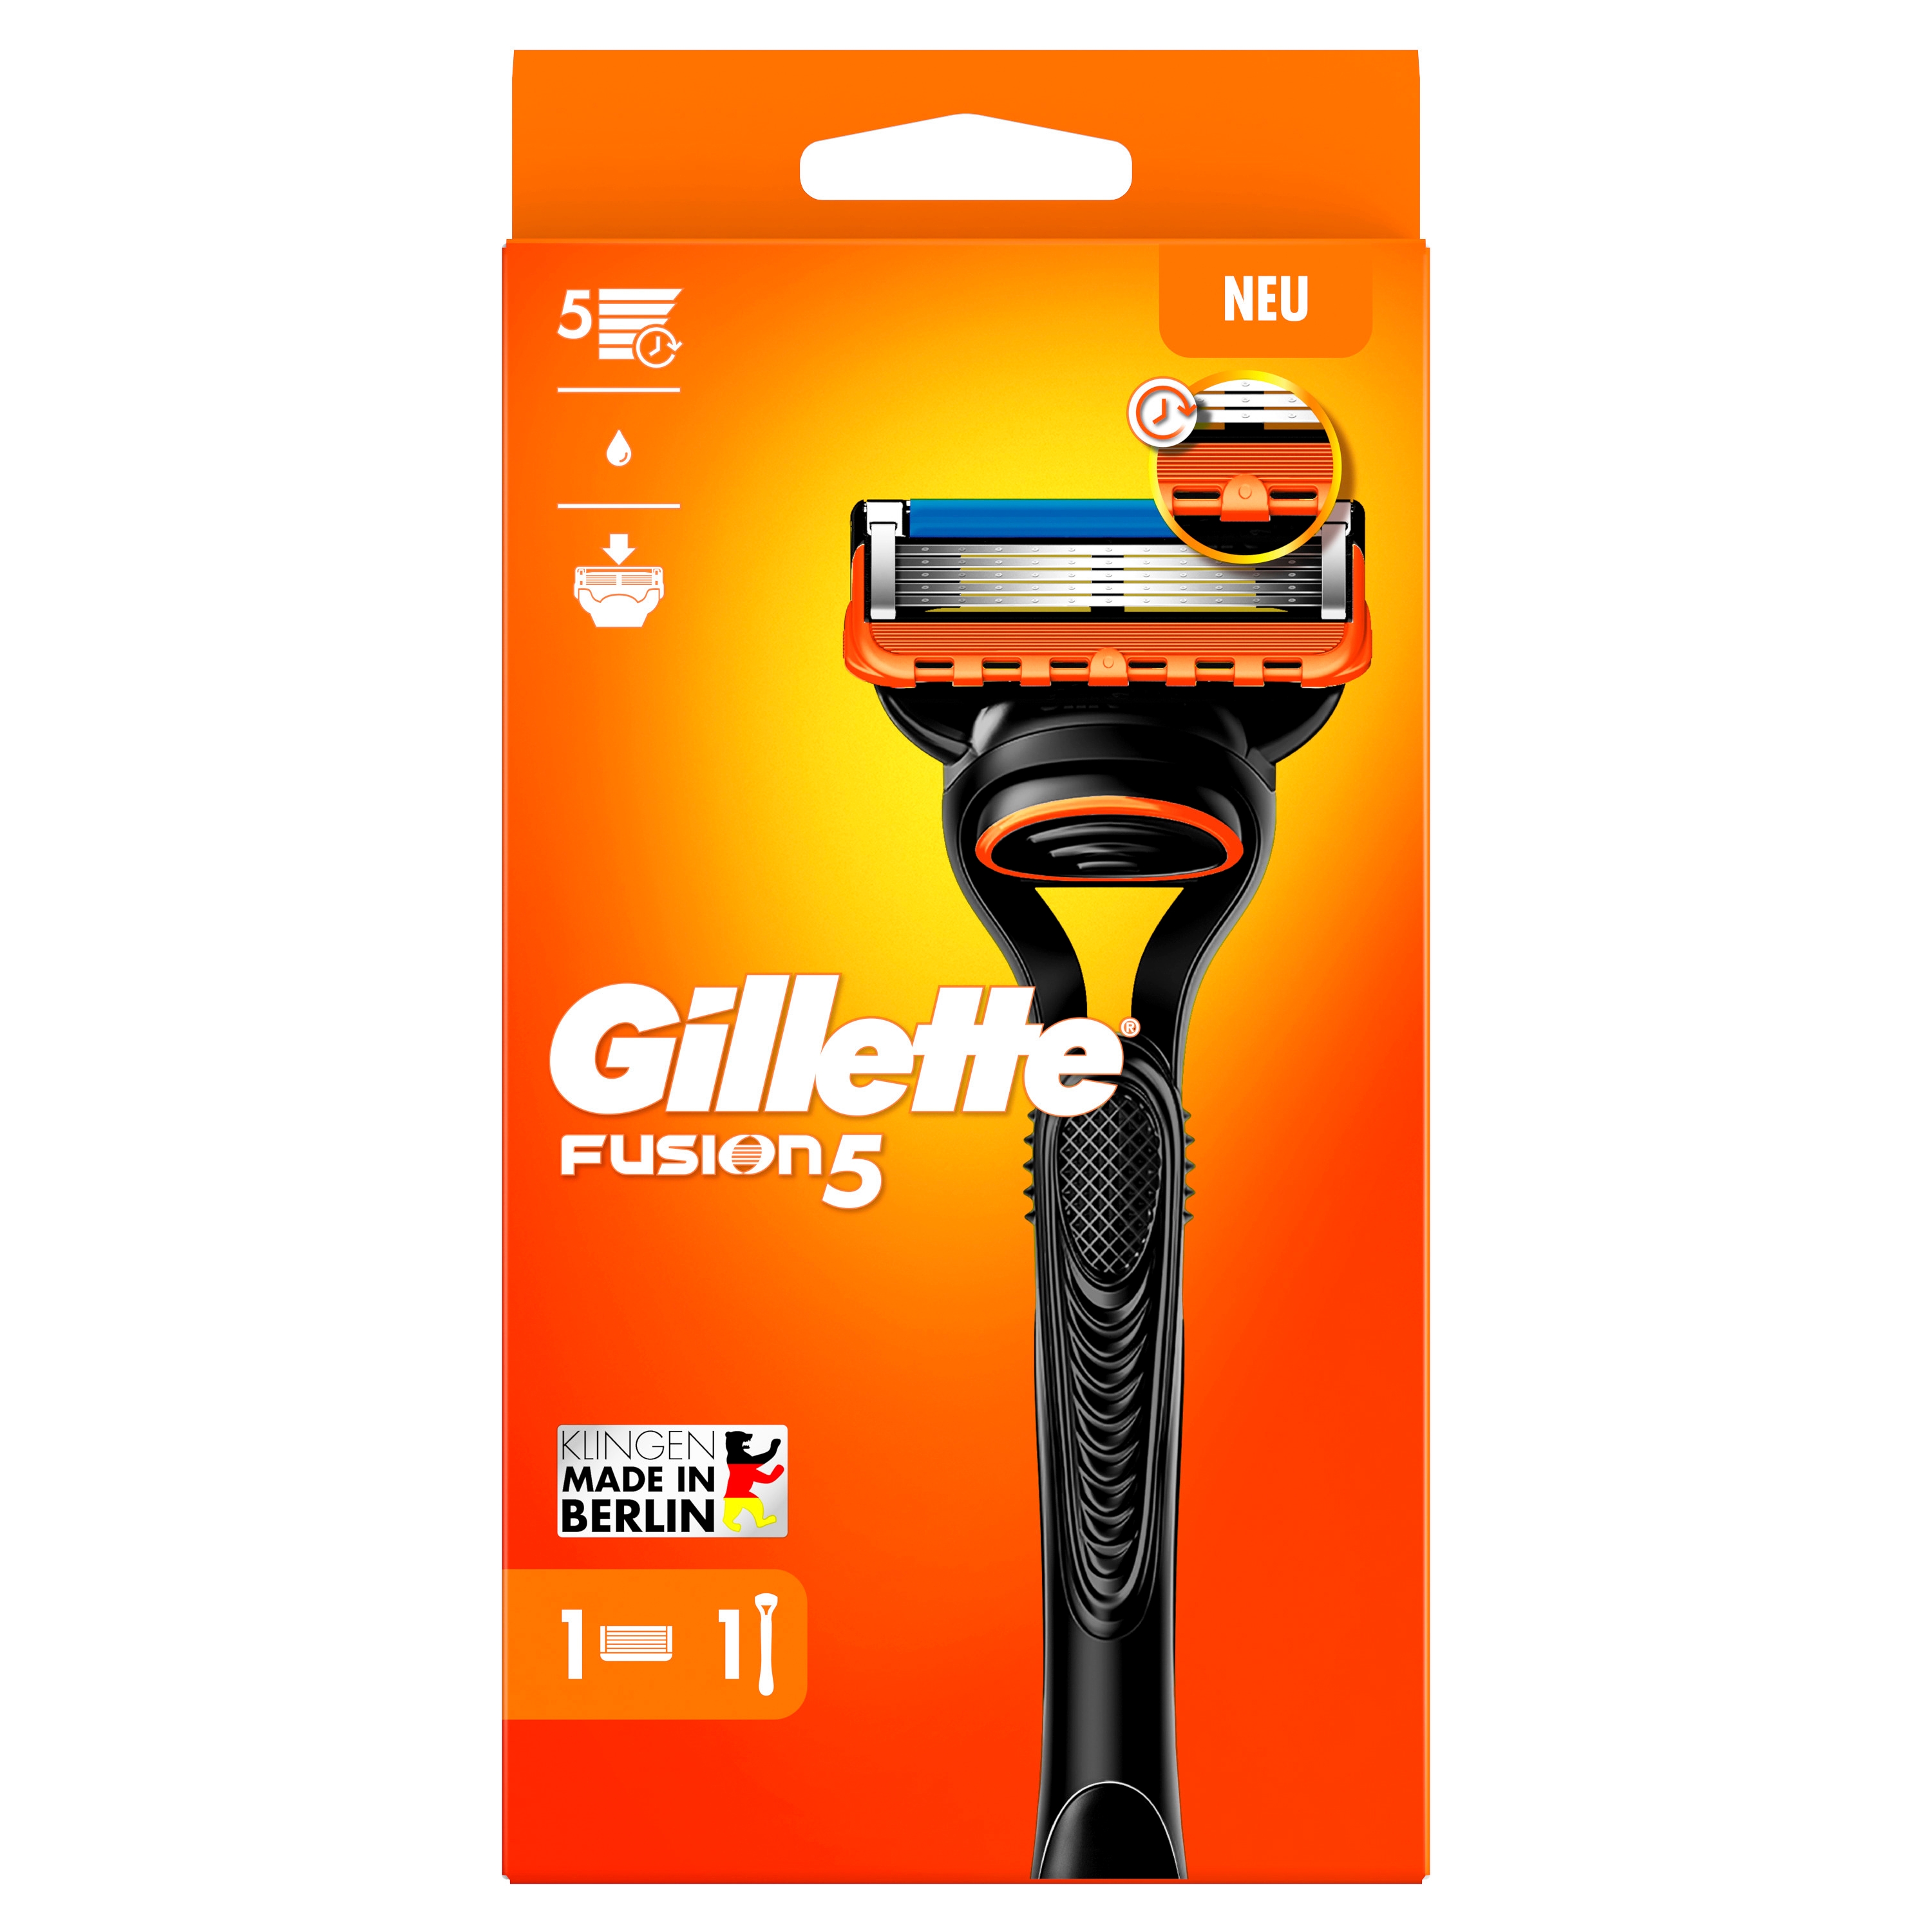 Produktbild von Gillette - Fusion5 Rasierapparat mit 1 Klinge